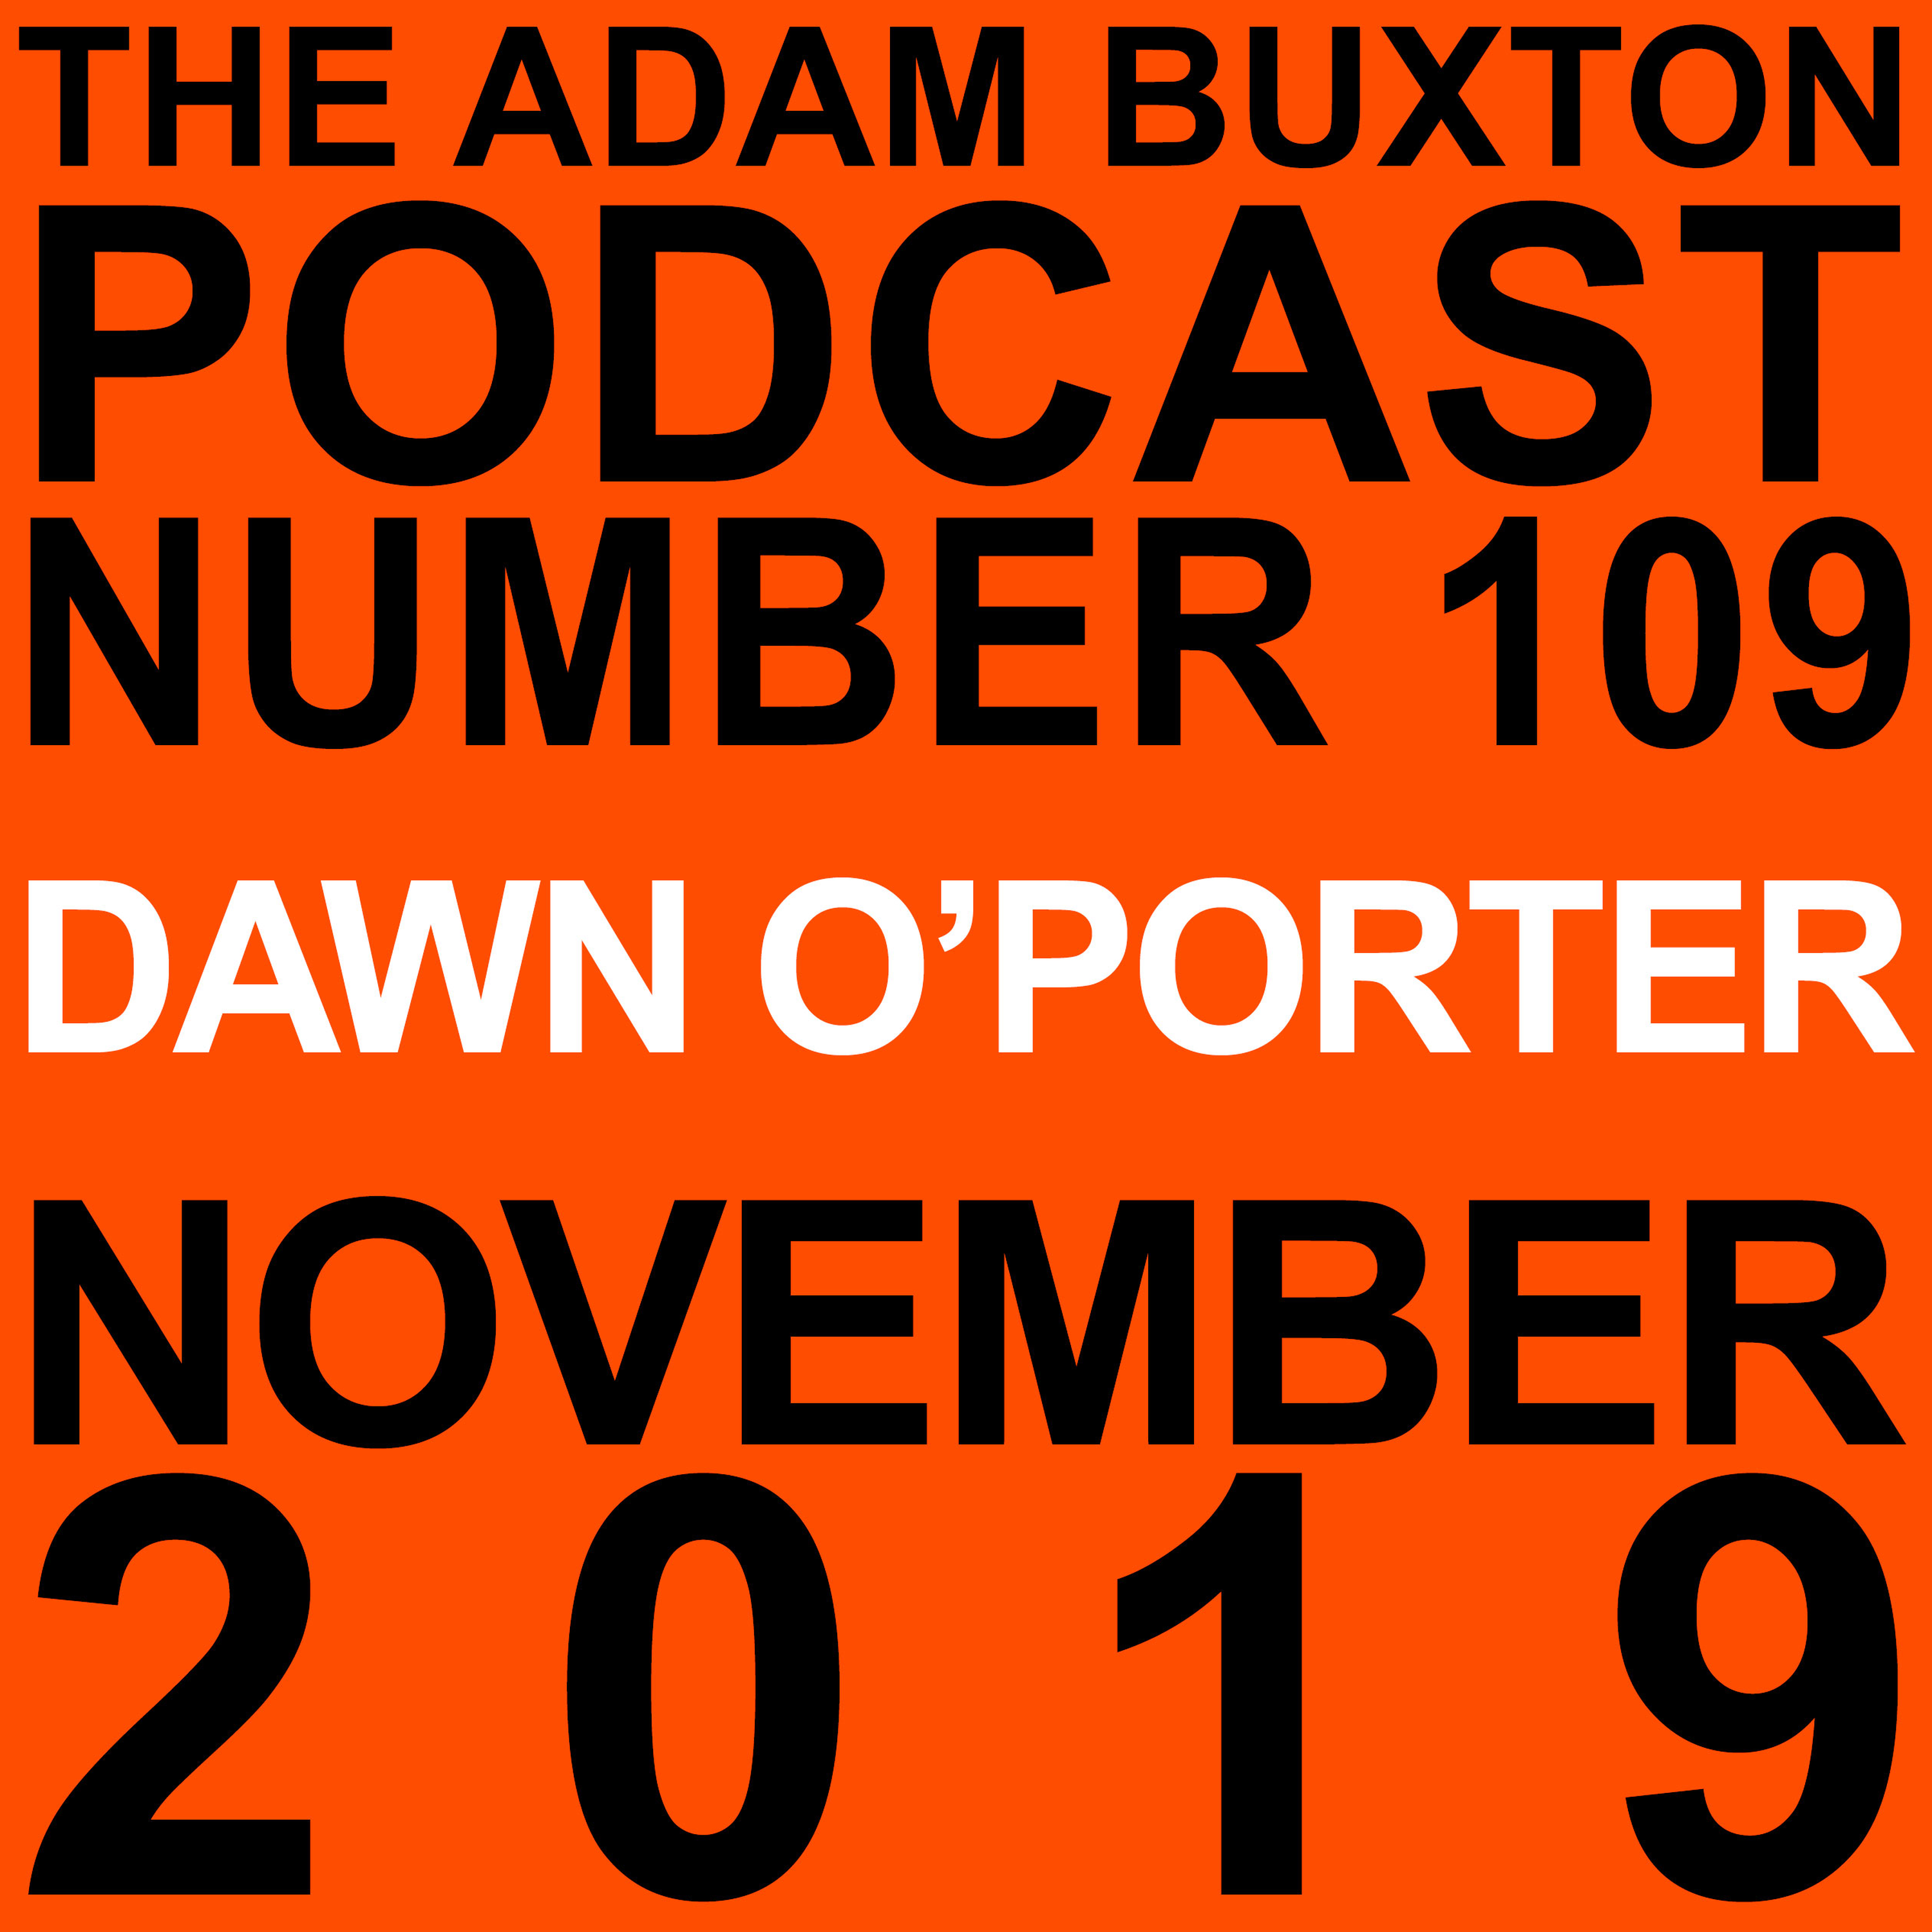 EP.109 - DAWN O’PORTER